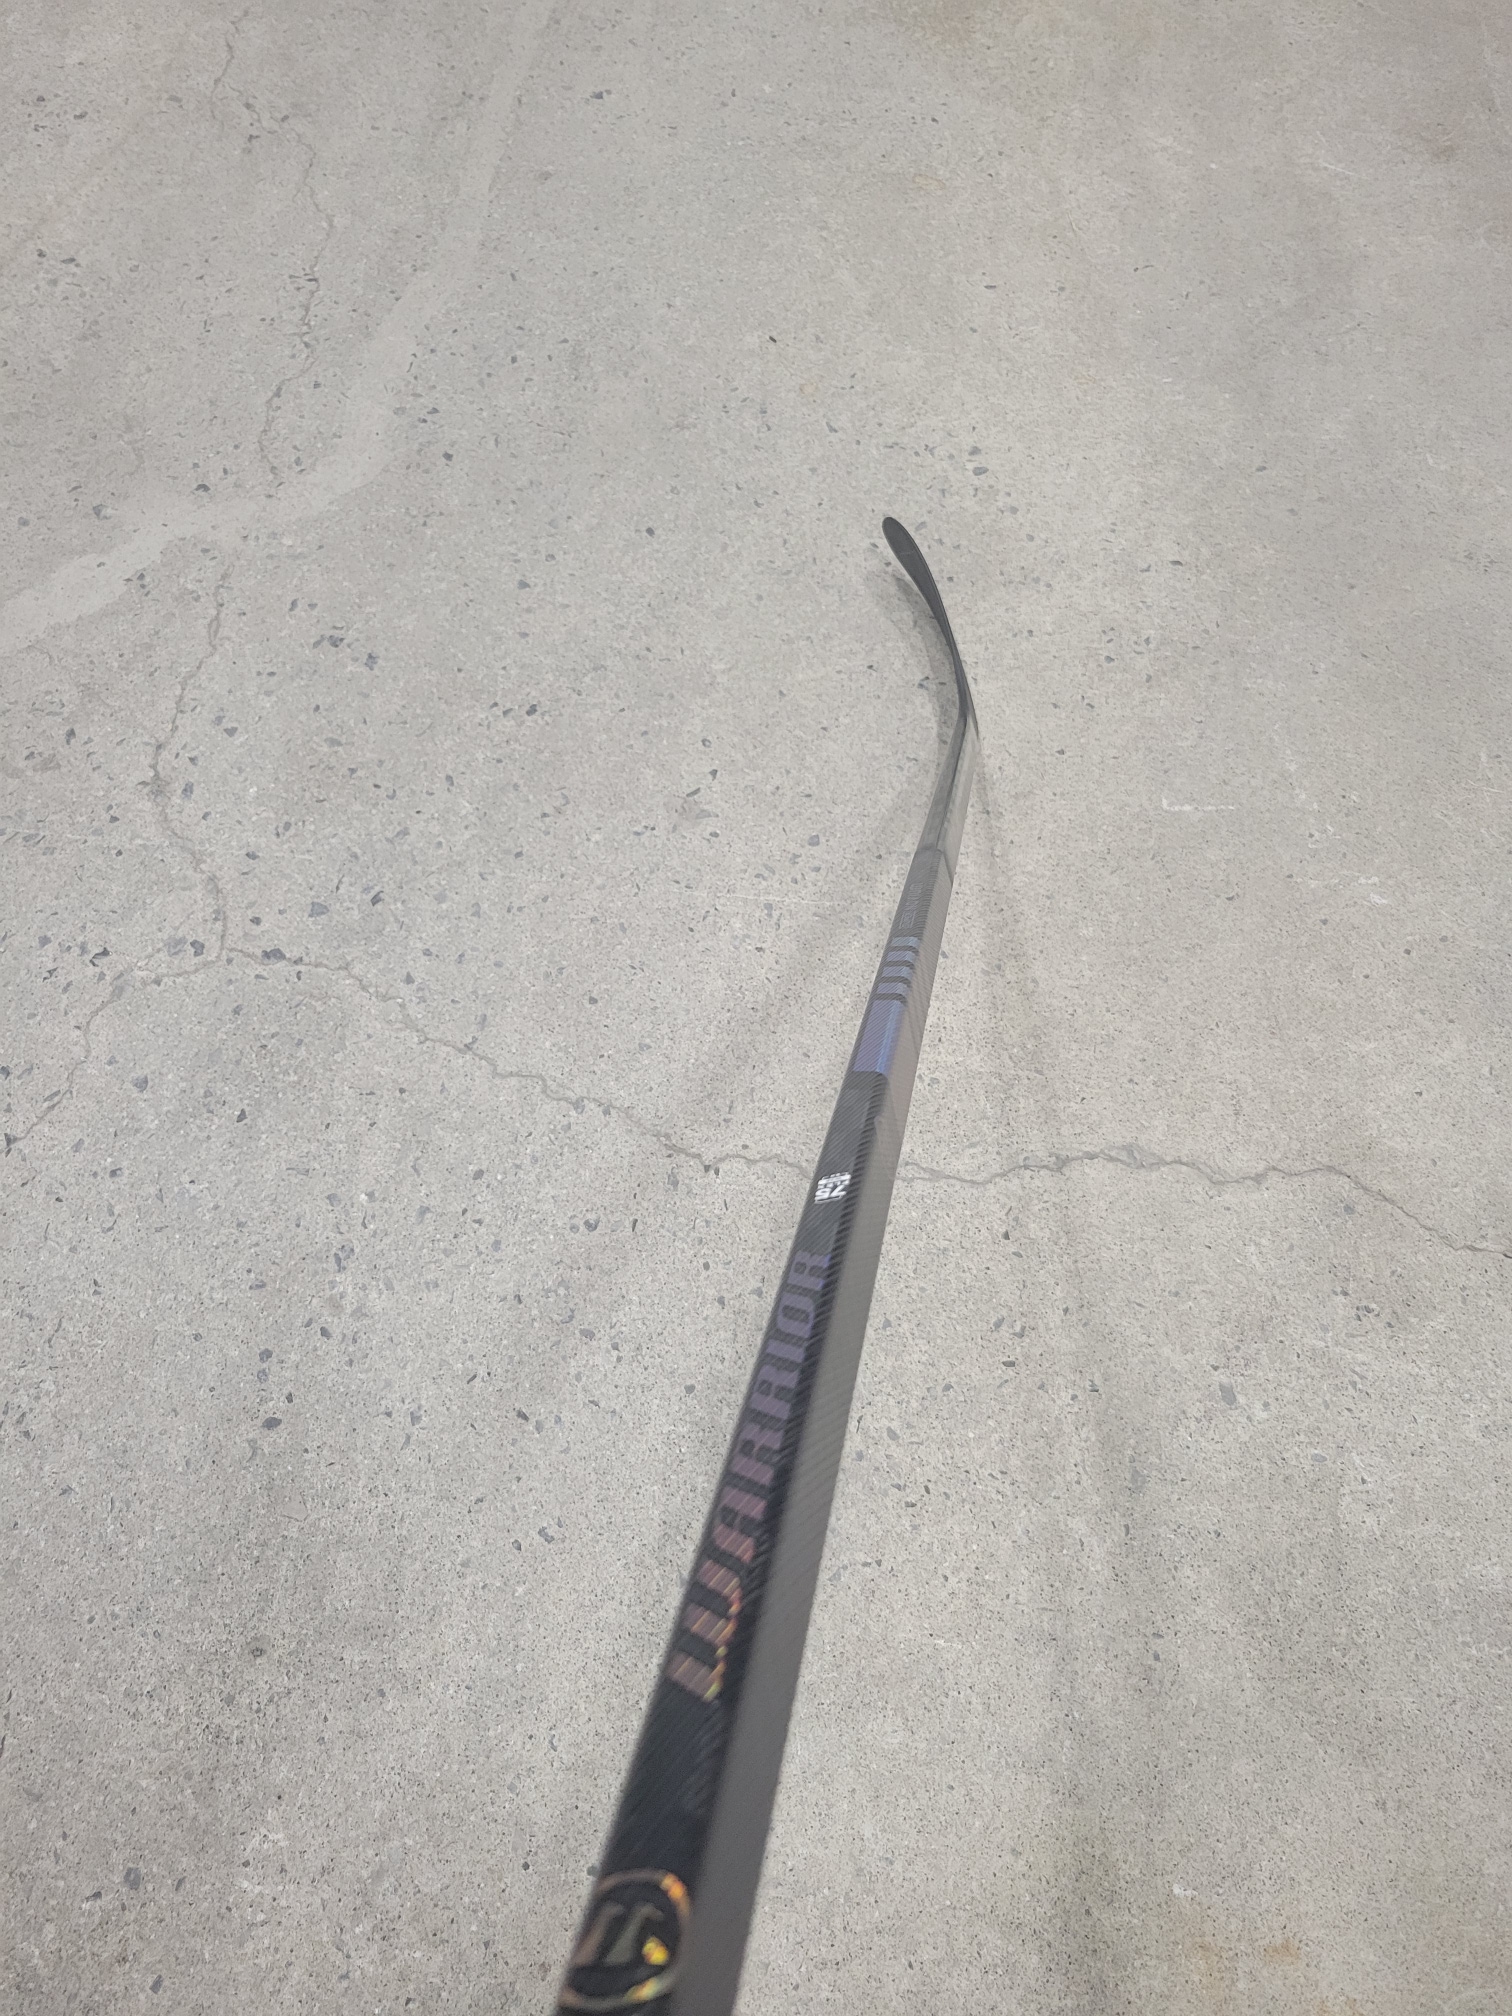 New Right Hand Warrior Super Novium Hockey Stick W28 75 flex